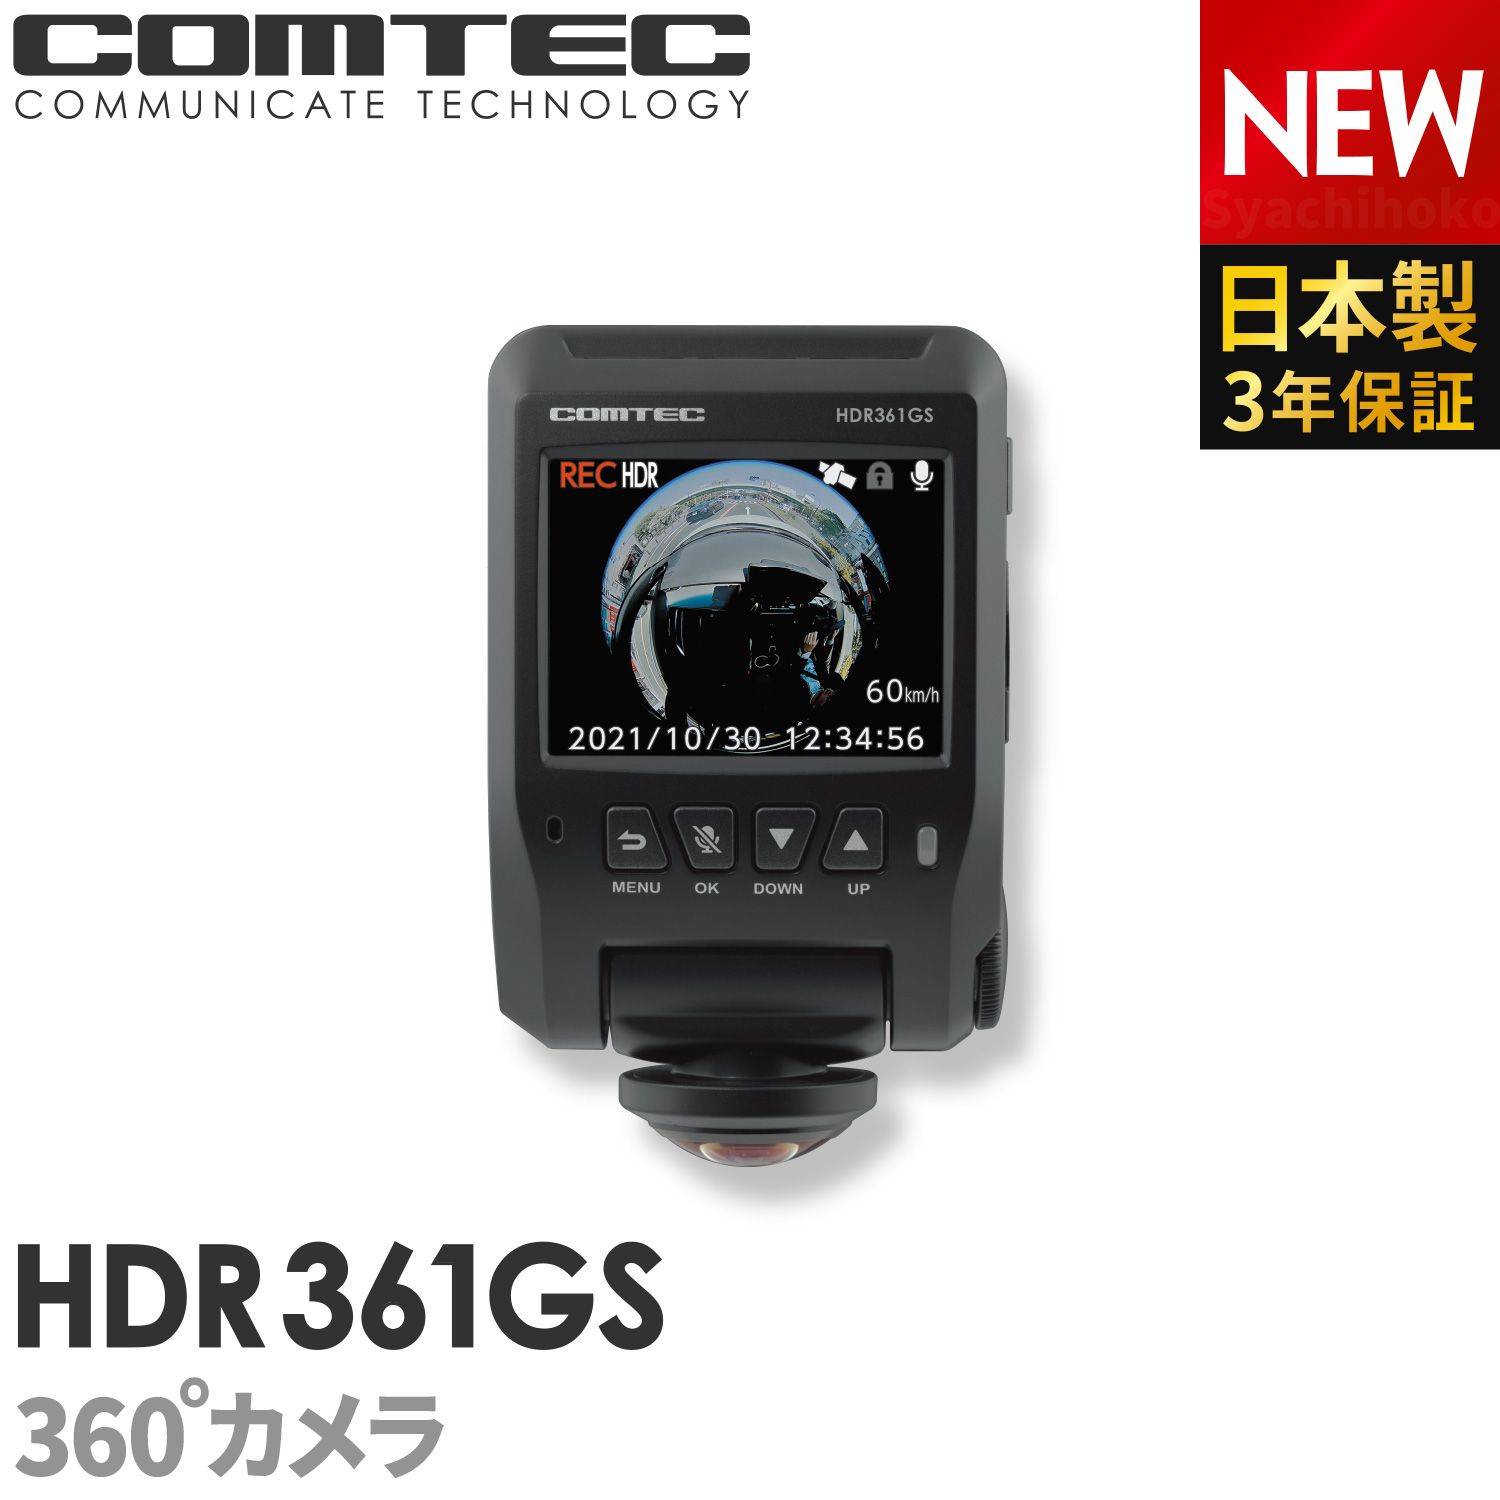 ドライブレコーダー 日本製 3年保証 360度カメラ コムテック Hdr361gs 前後左右 全方位記録 ノイズ対策済 常時 衝撃録画 Gps搭載 駐車 監視対応 2 4インチ液晶 ドラレコ Labomgd Ch